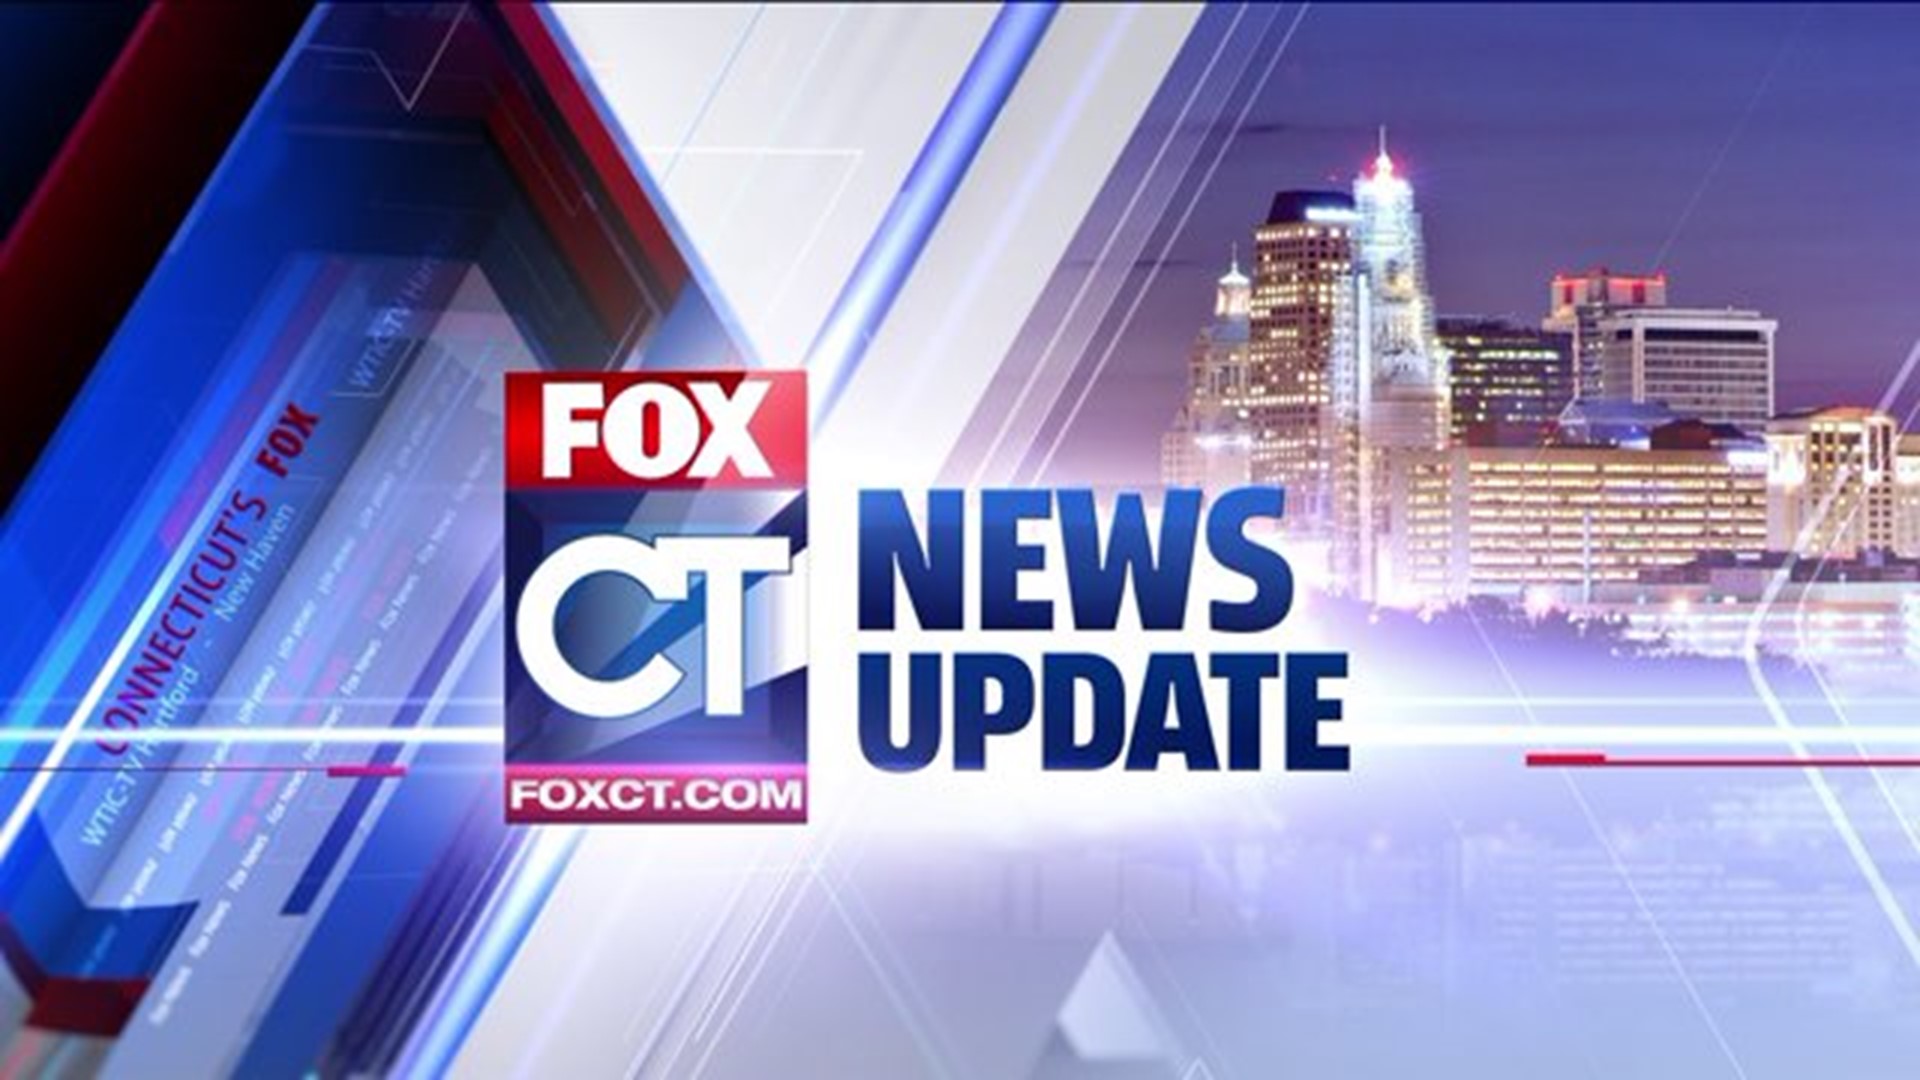 FOX CT News Update